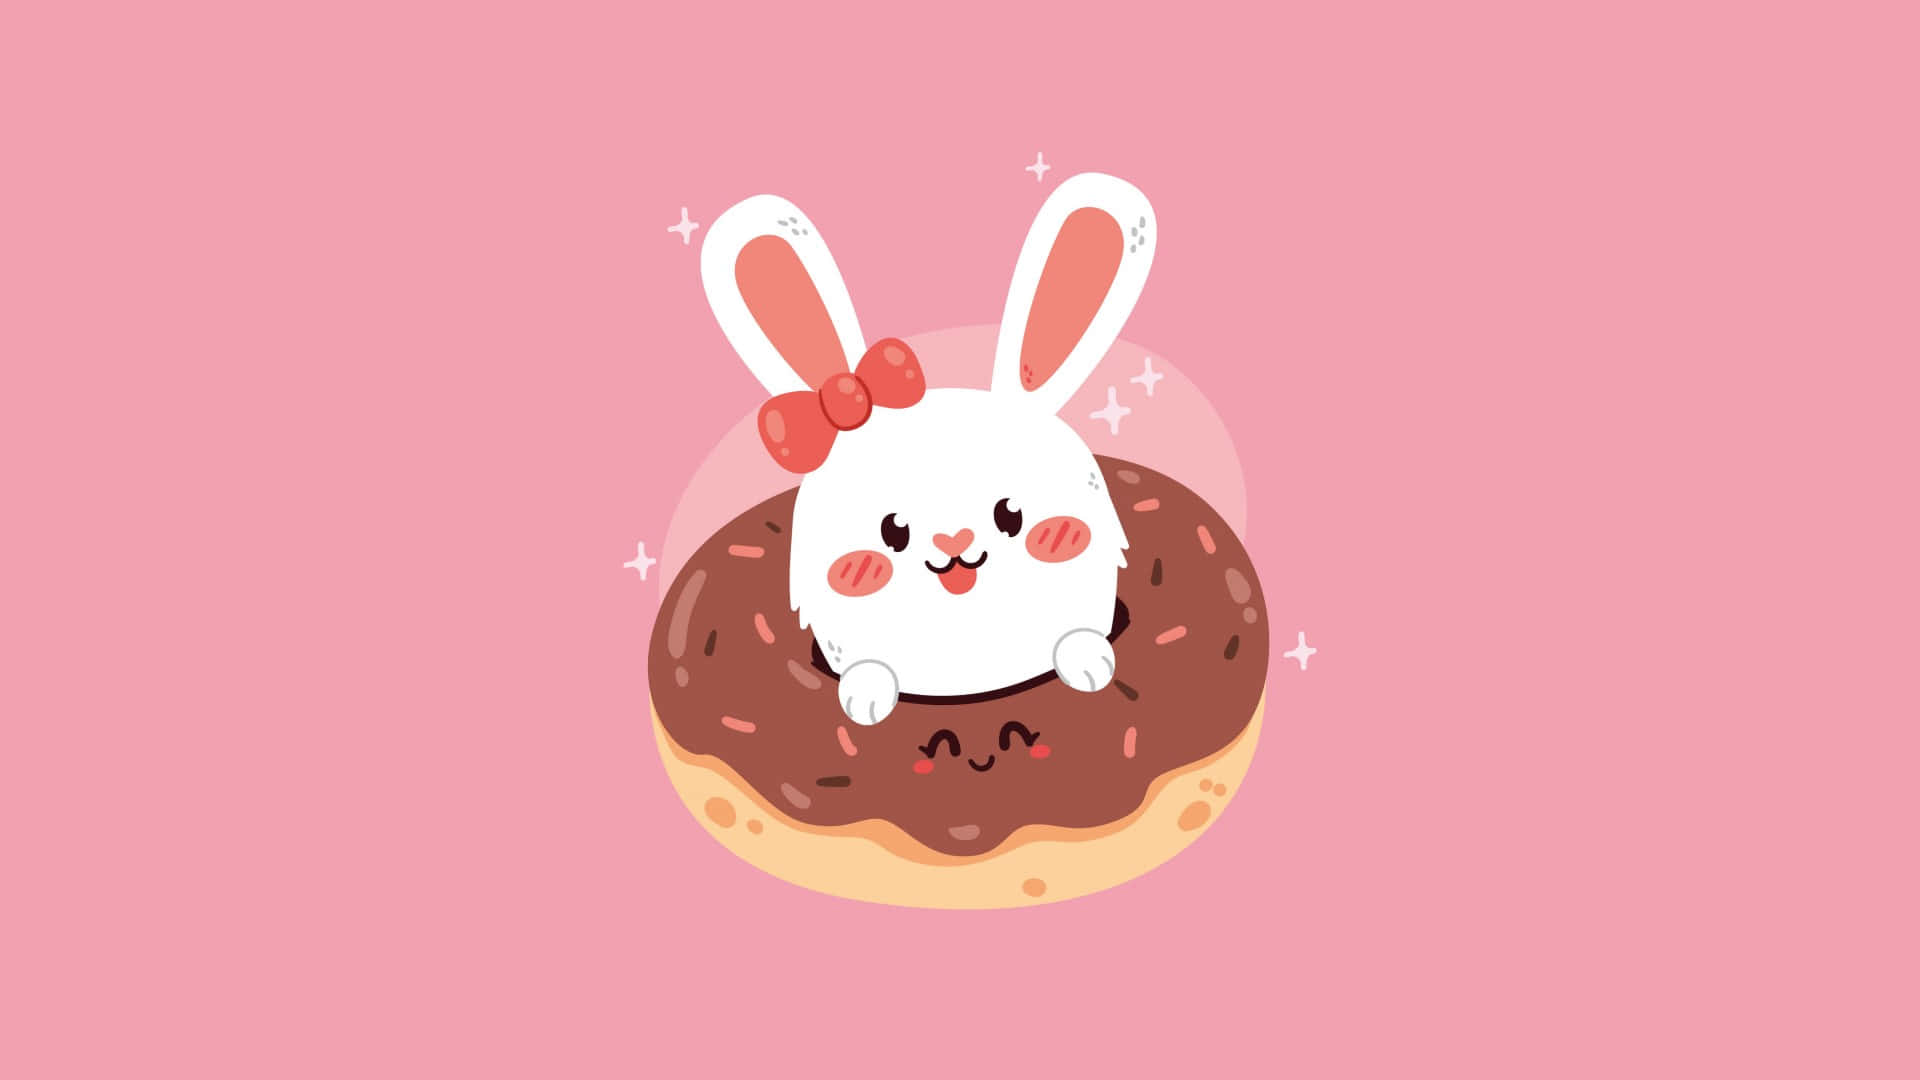 Cute Bunny On Donut Illustration Wallpaper